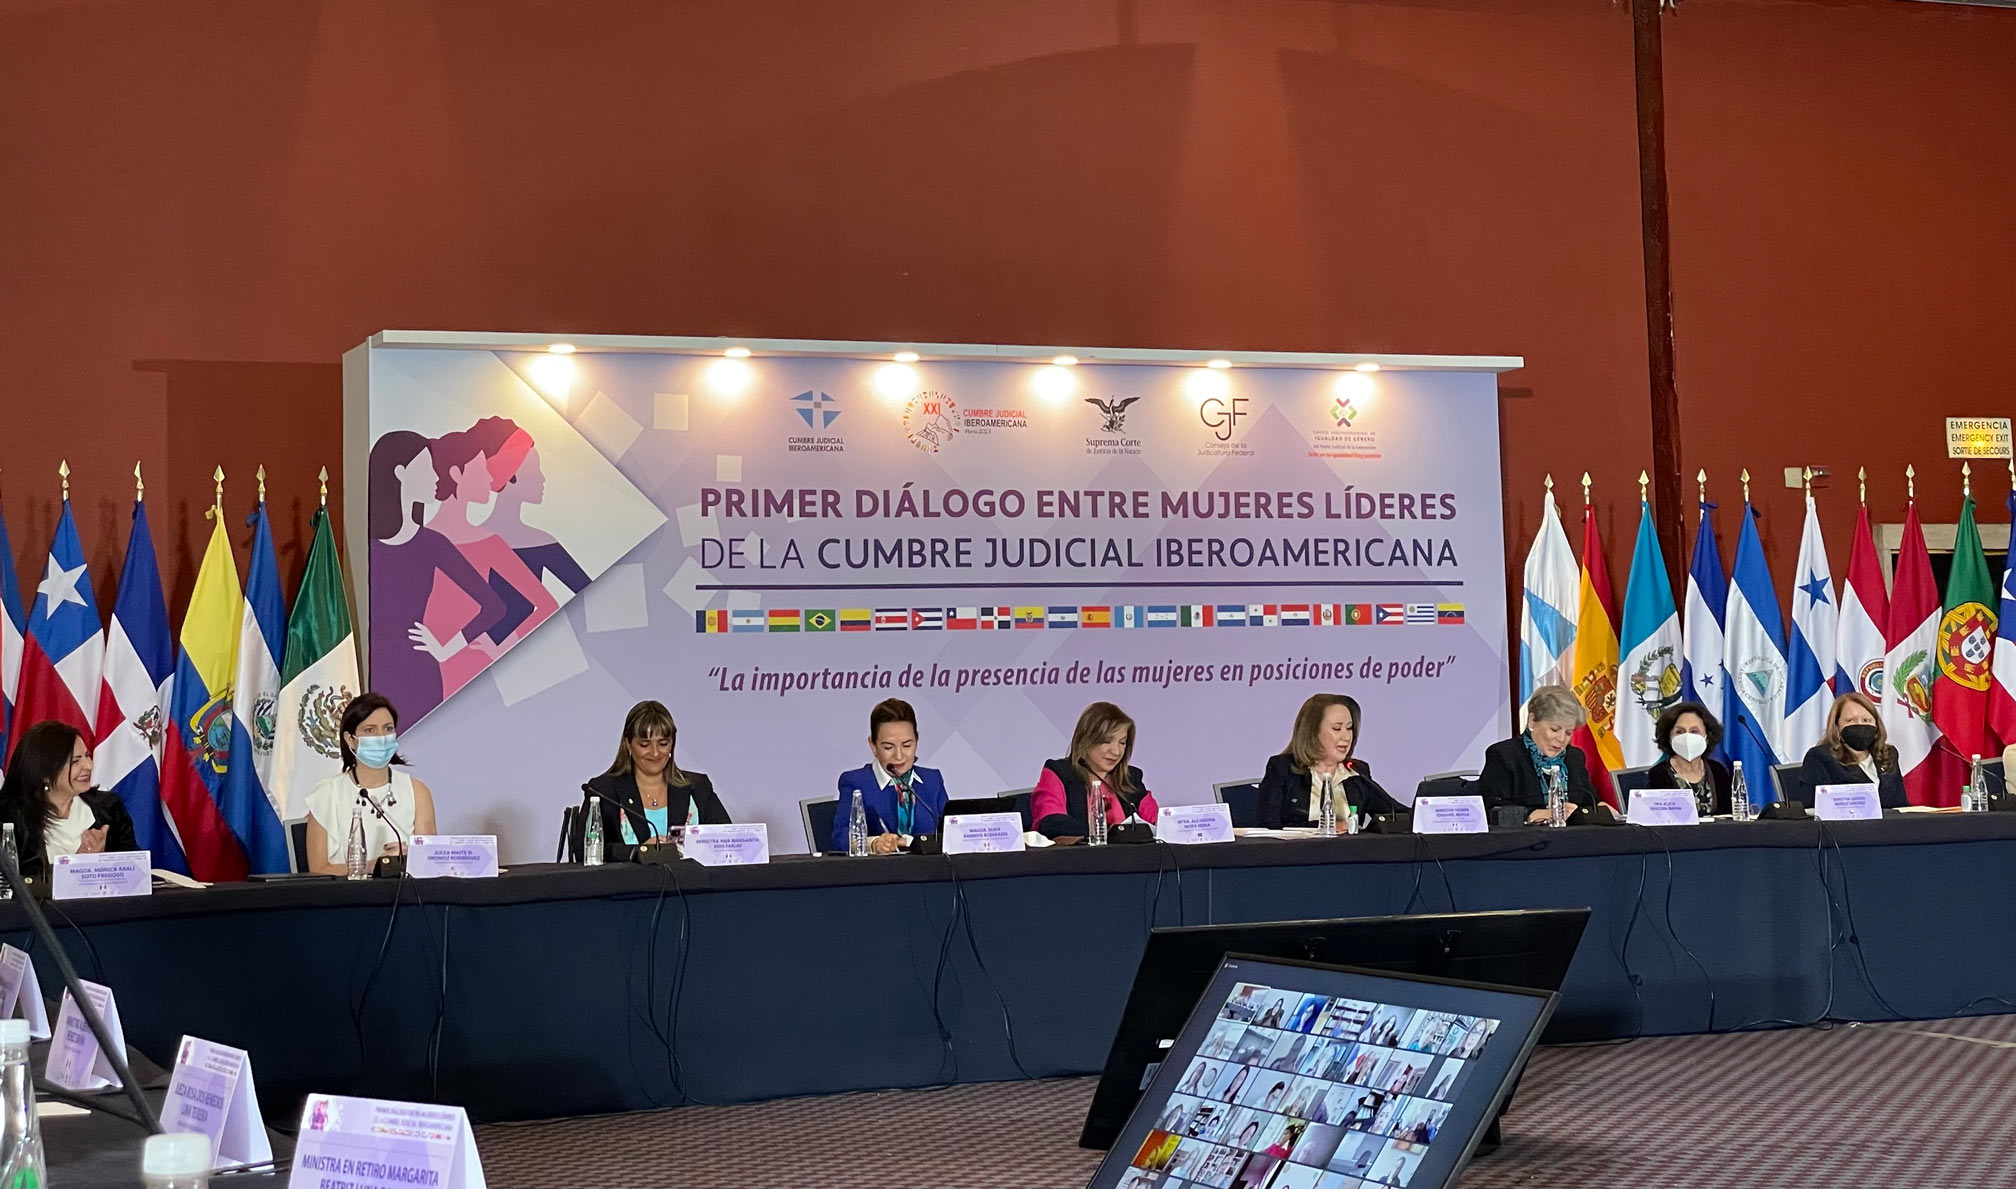 El Primer Diálogo entre Mujeres Líderes de la Cumbre Judicial Iberoamericana busca generar una red de colaboración entre juezas, propiciar la vinculación desde la sororidad y conectar las agendas comunes, así como incentivar la cooperación internacional entre mujeres líderes de Iberoamérica.